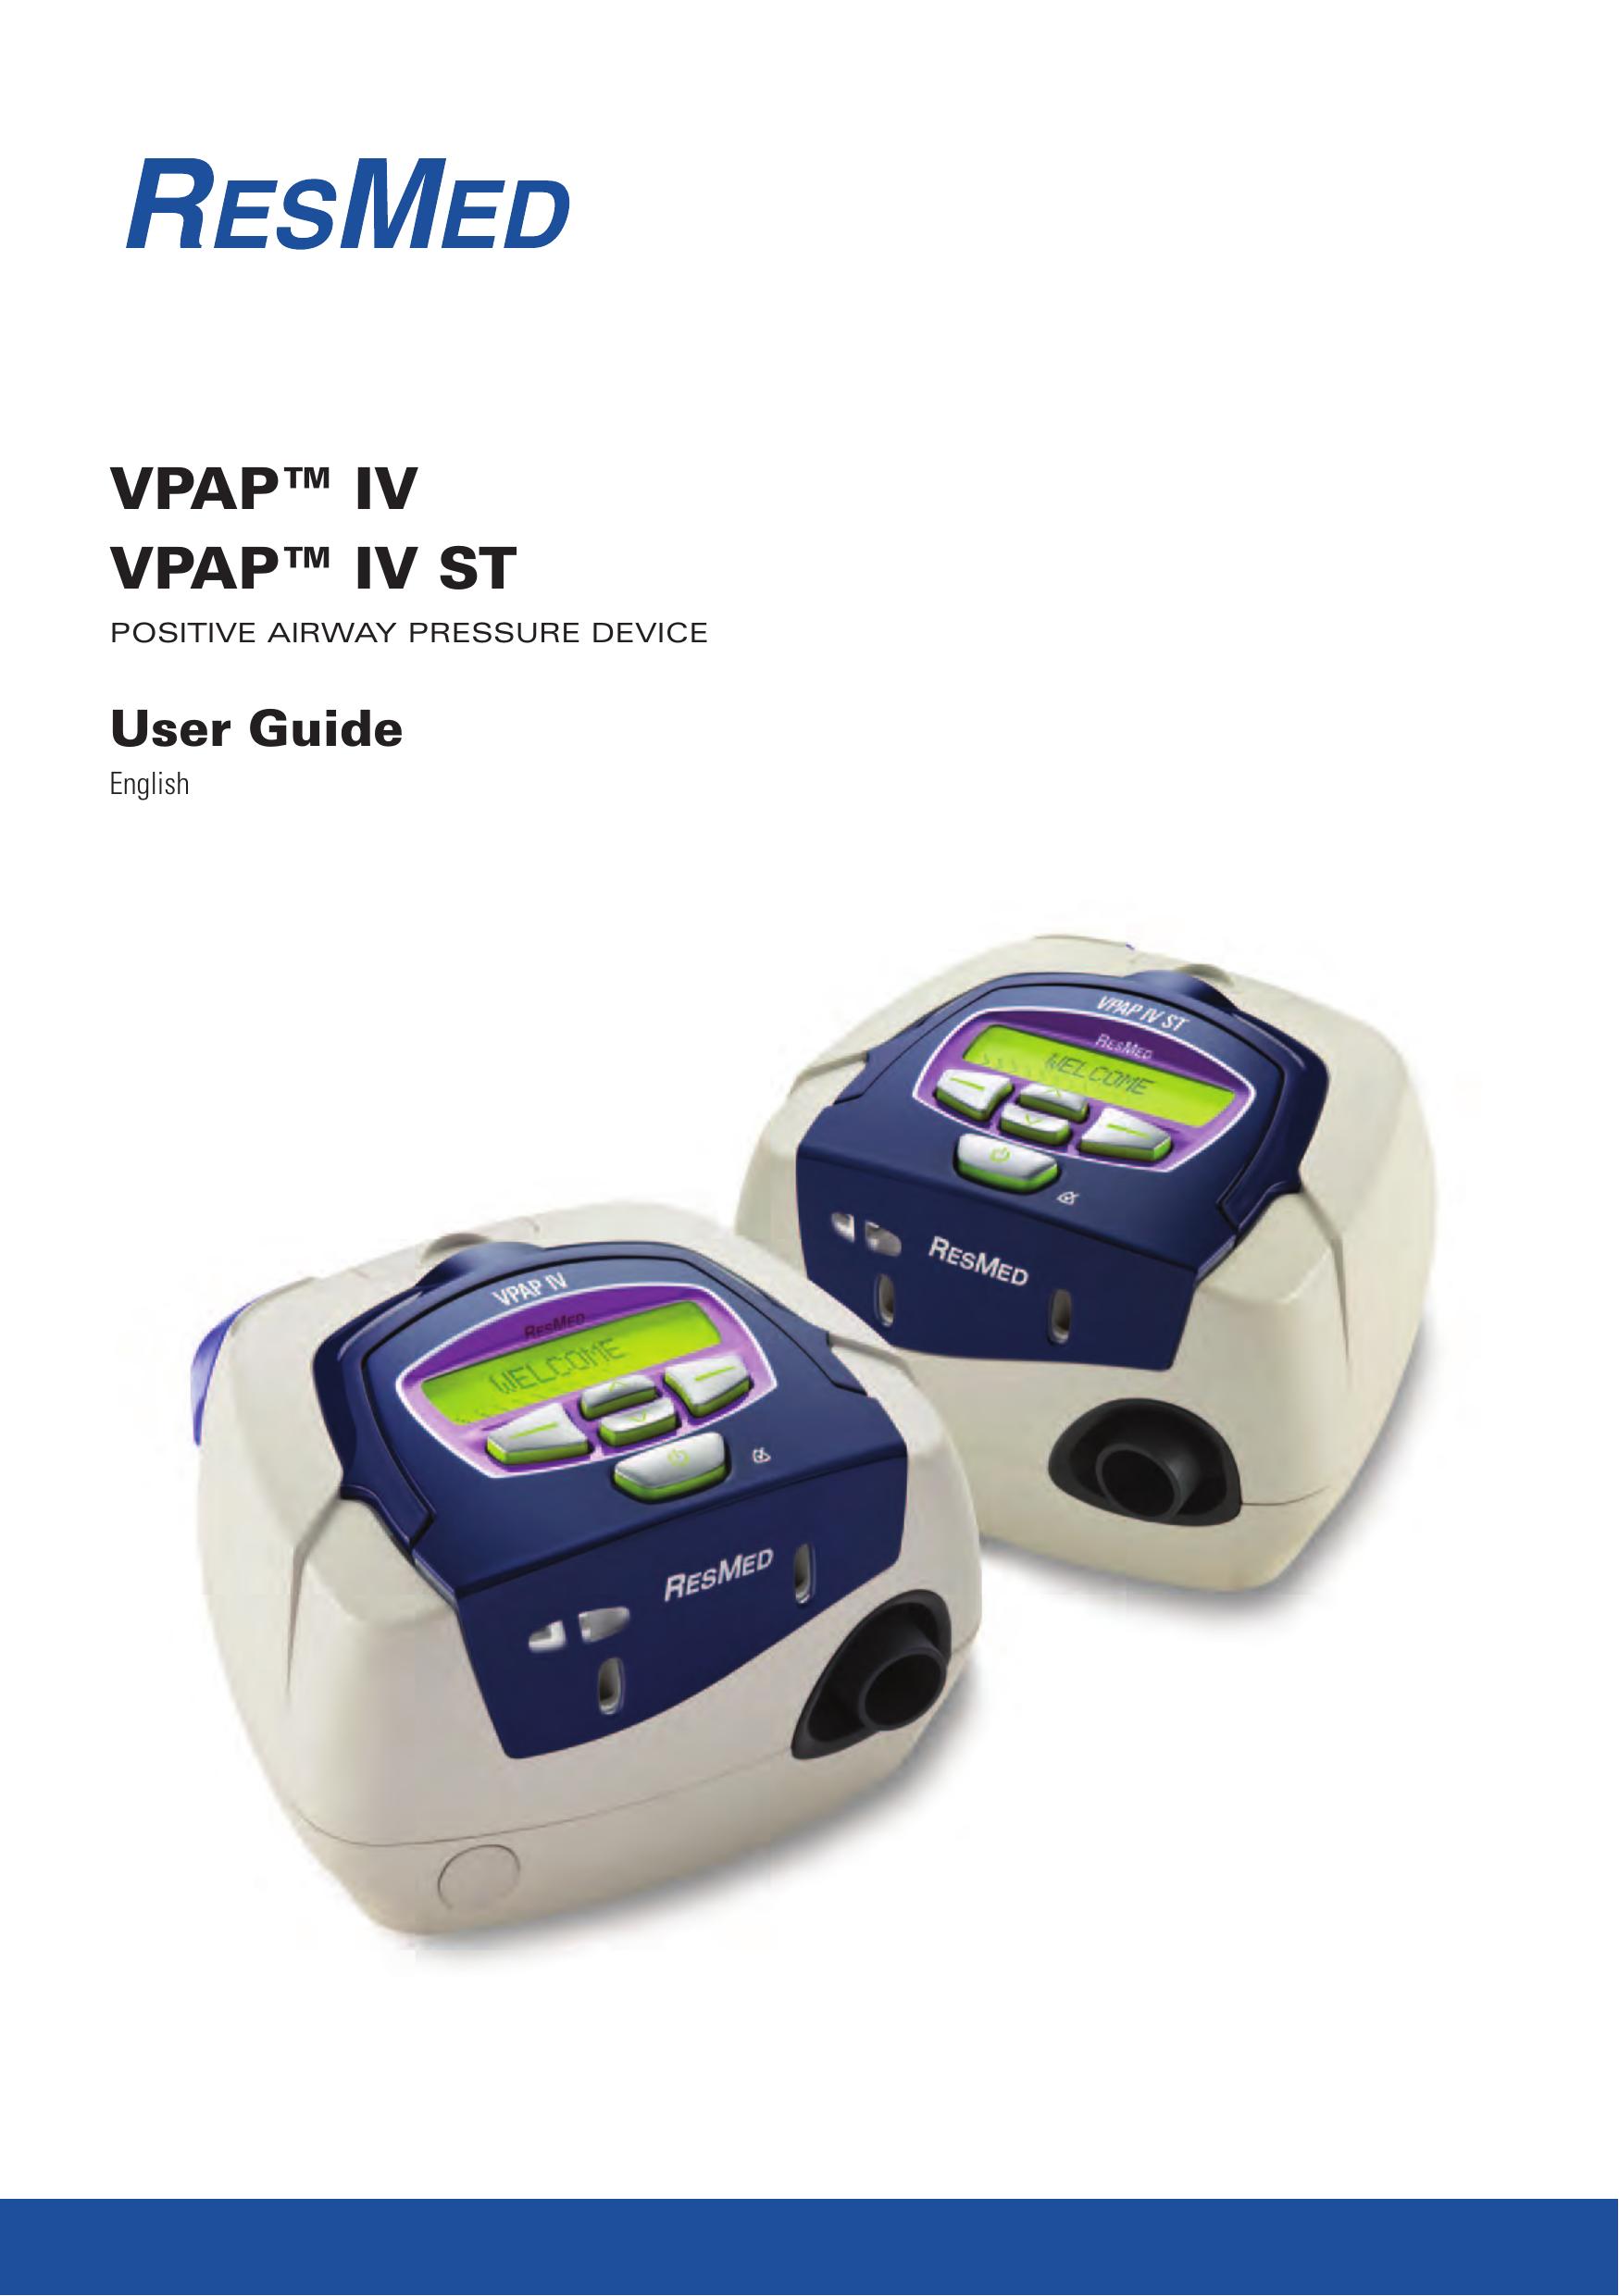 ResMed VPAP IV ST Blood Pressure Monitor User Manual